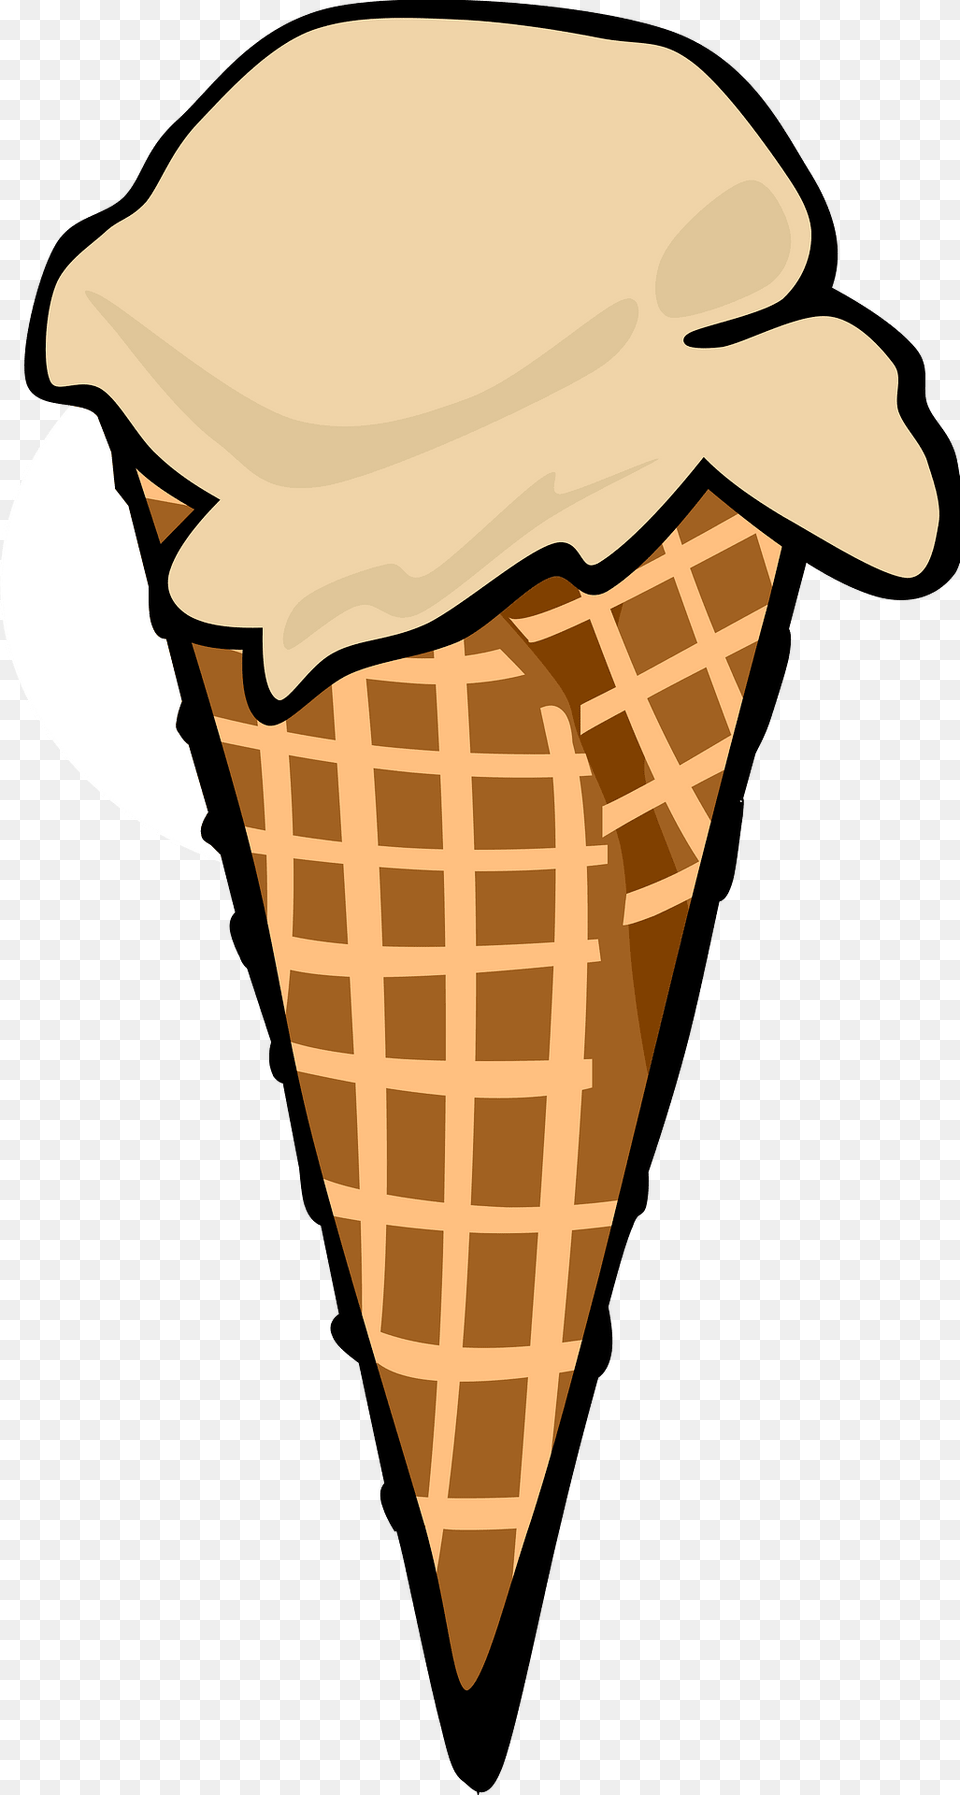 Icecream Clipart, Cream, Dessert, Food, Ice Cream Png Image